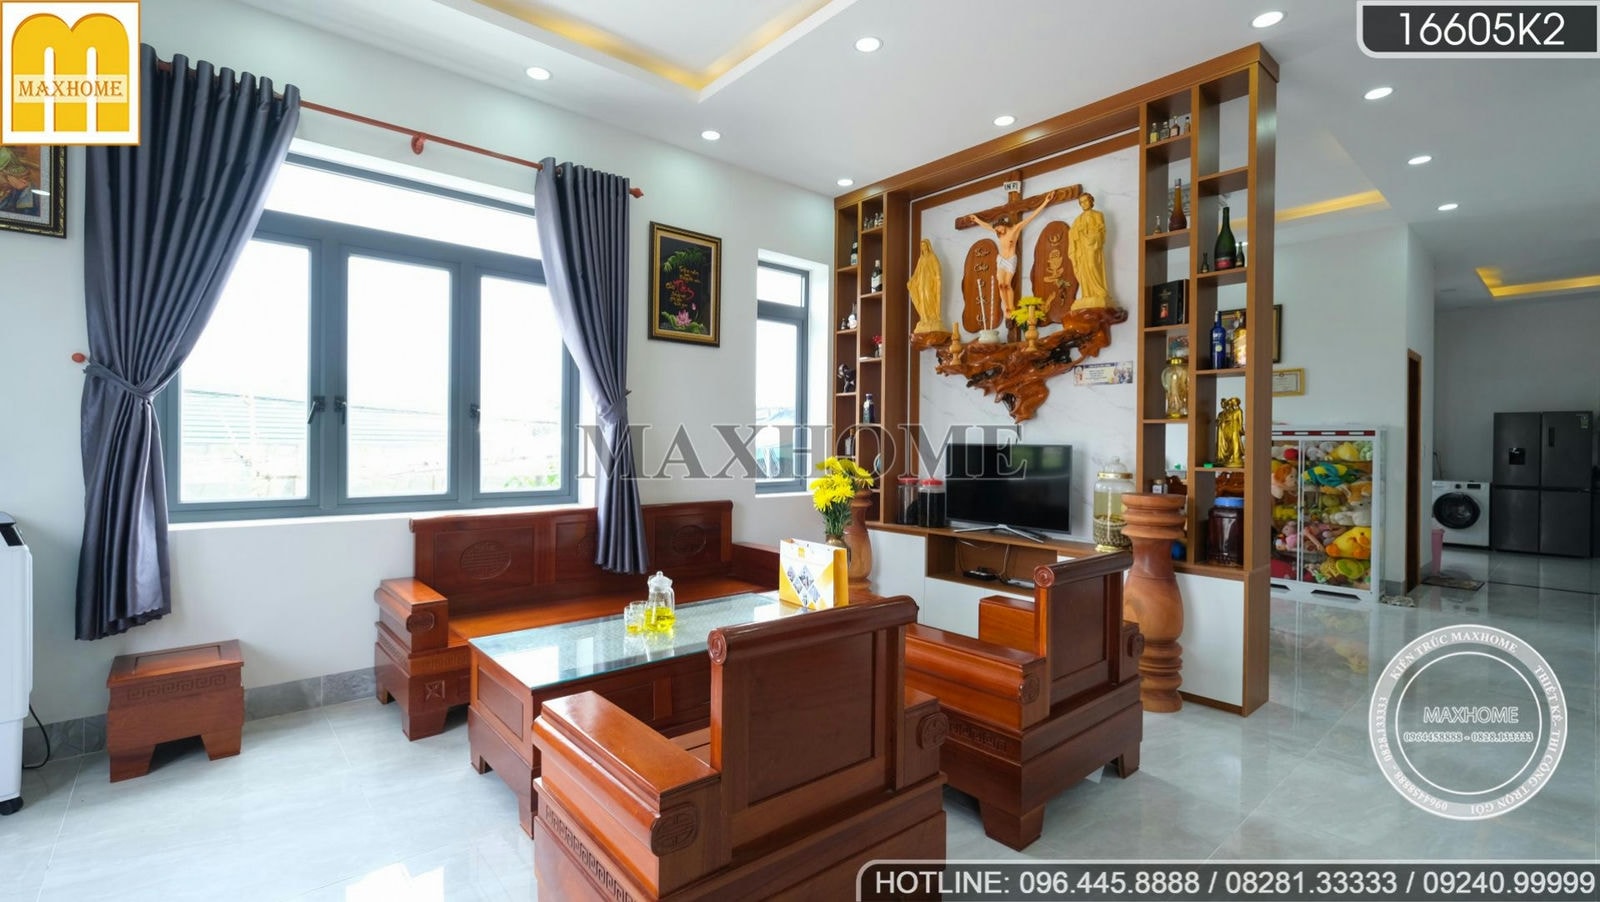 Tham quan bộ nội thất siêu đẹp tiện nghi do Maxhome thi công tại Bình Thuận